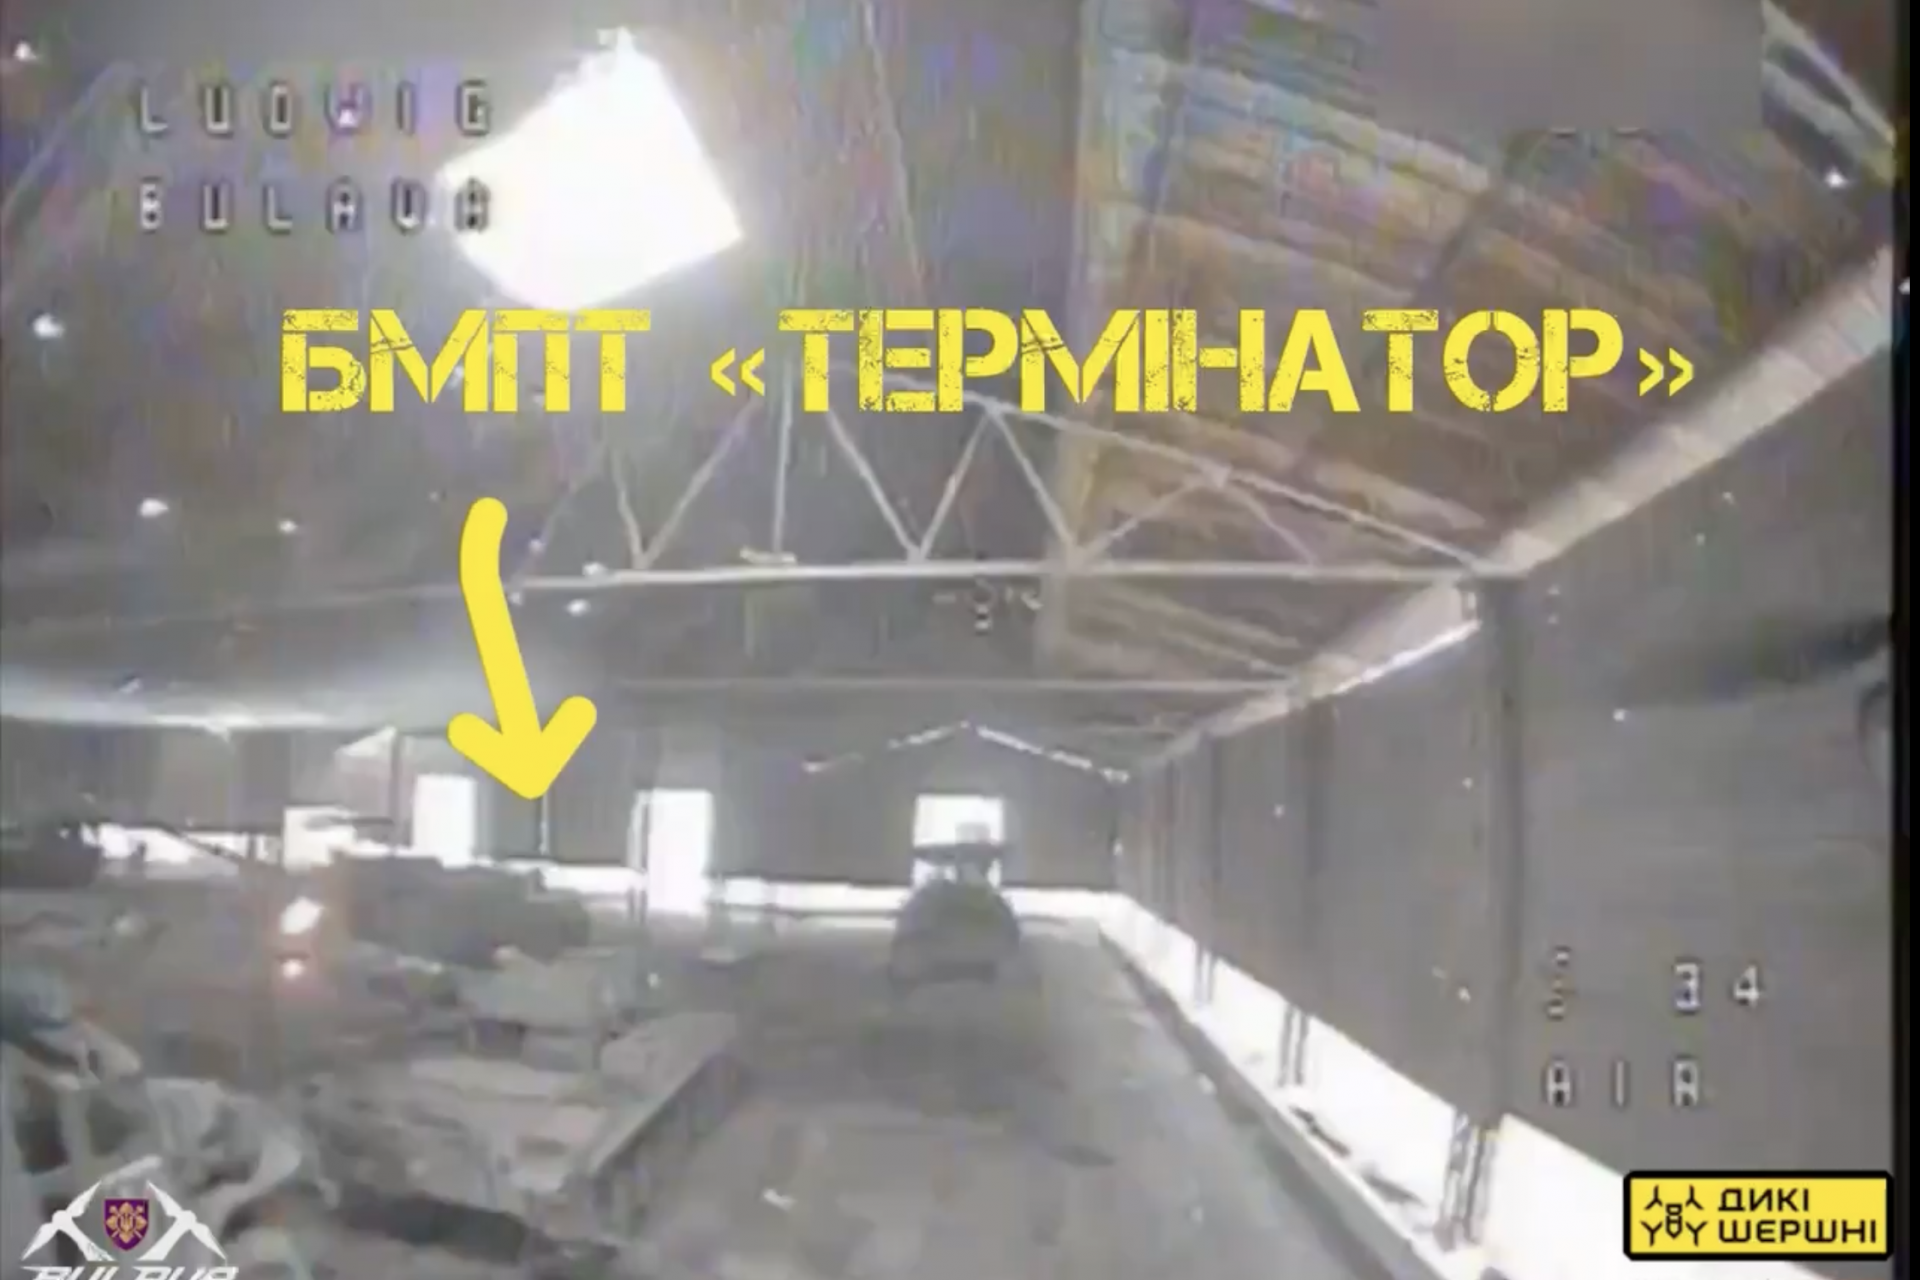 Un Terminator BMPT a été pris pour cible et touché par un drone